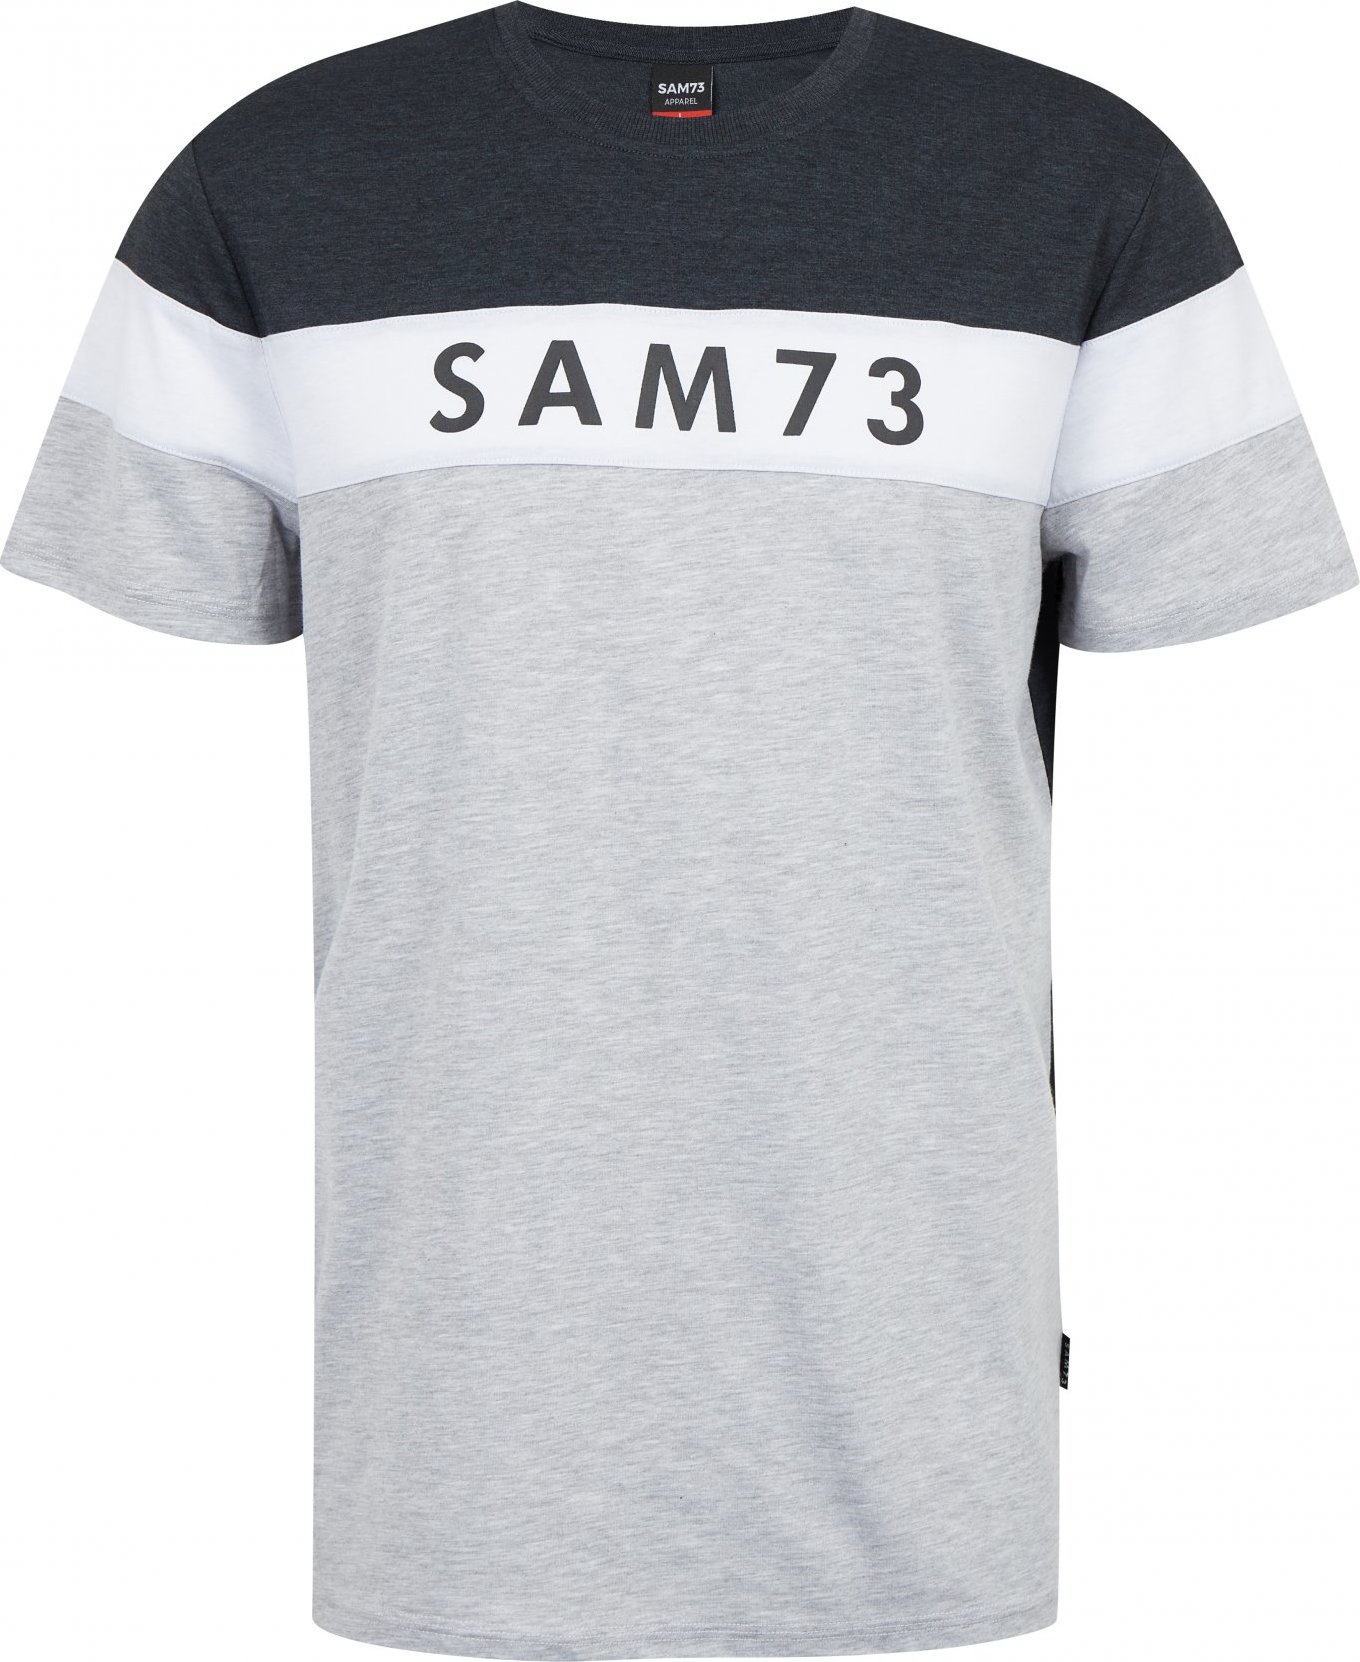 Pánské triko SAM73 kavix šedé Velikost: XL